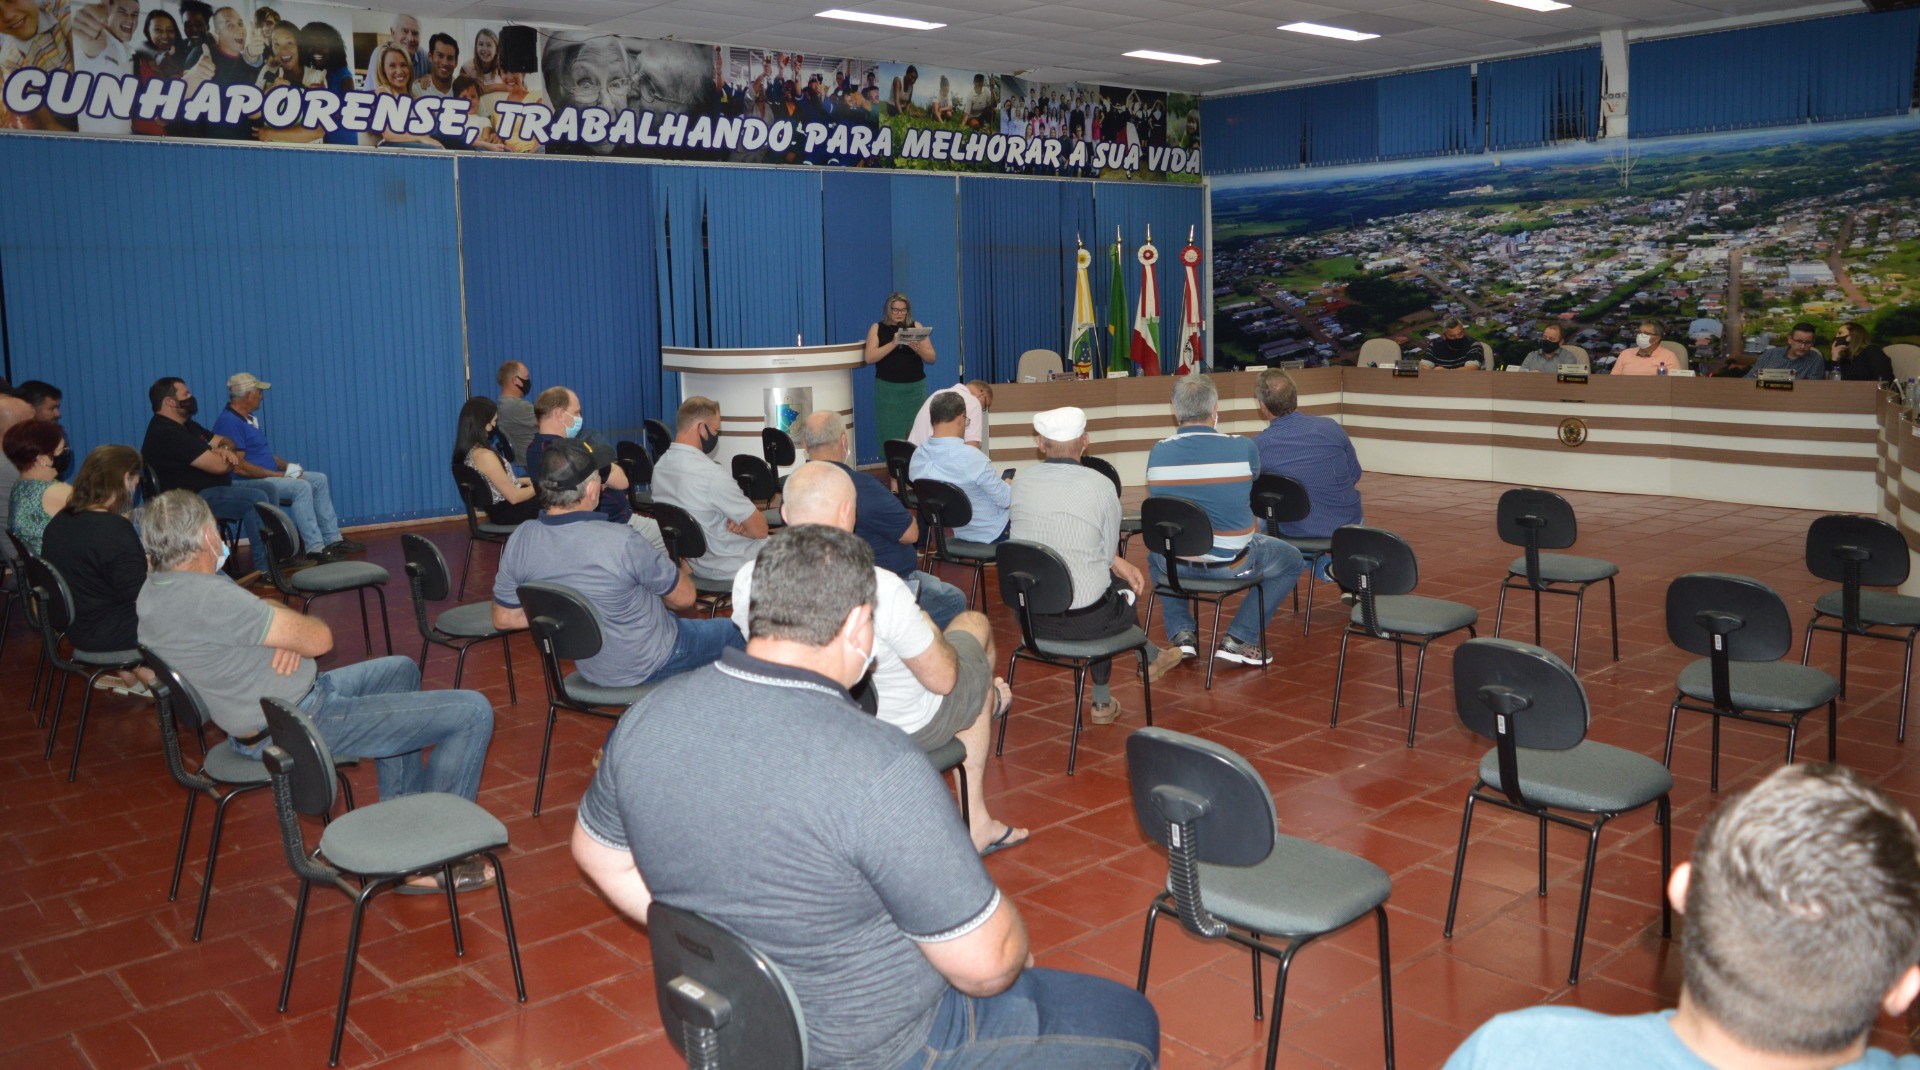 Partido Progressista de Cunha Porã realiza Convenção e eleição da nova diretoria